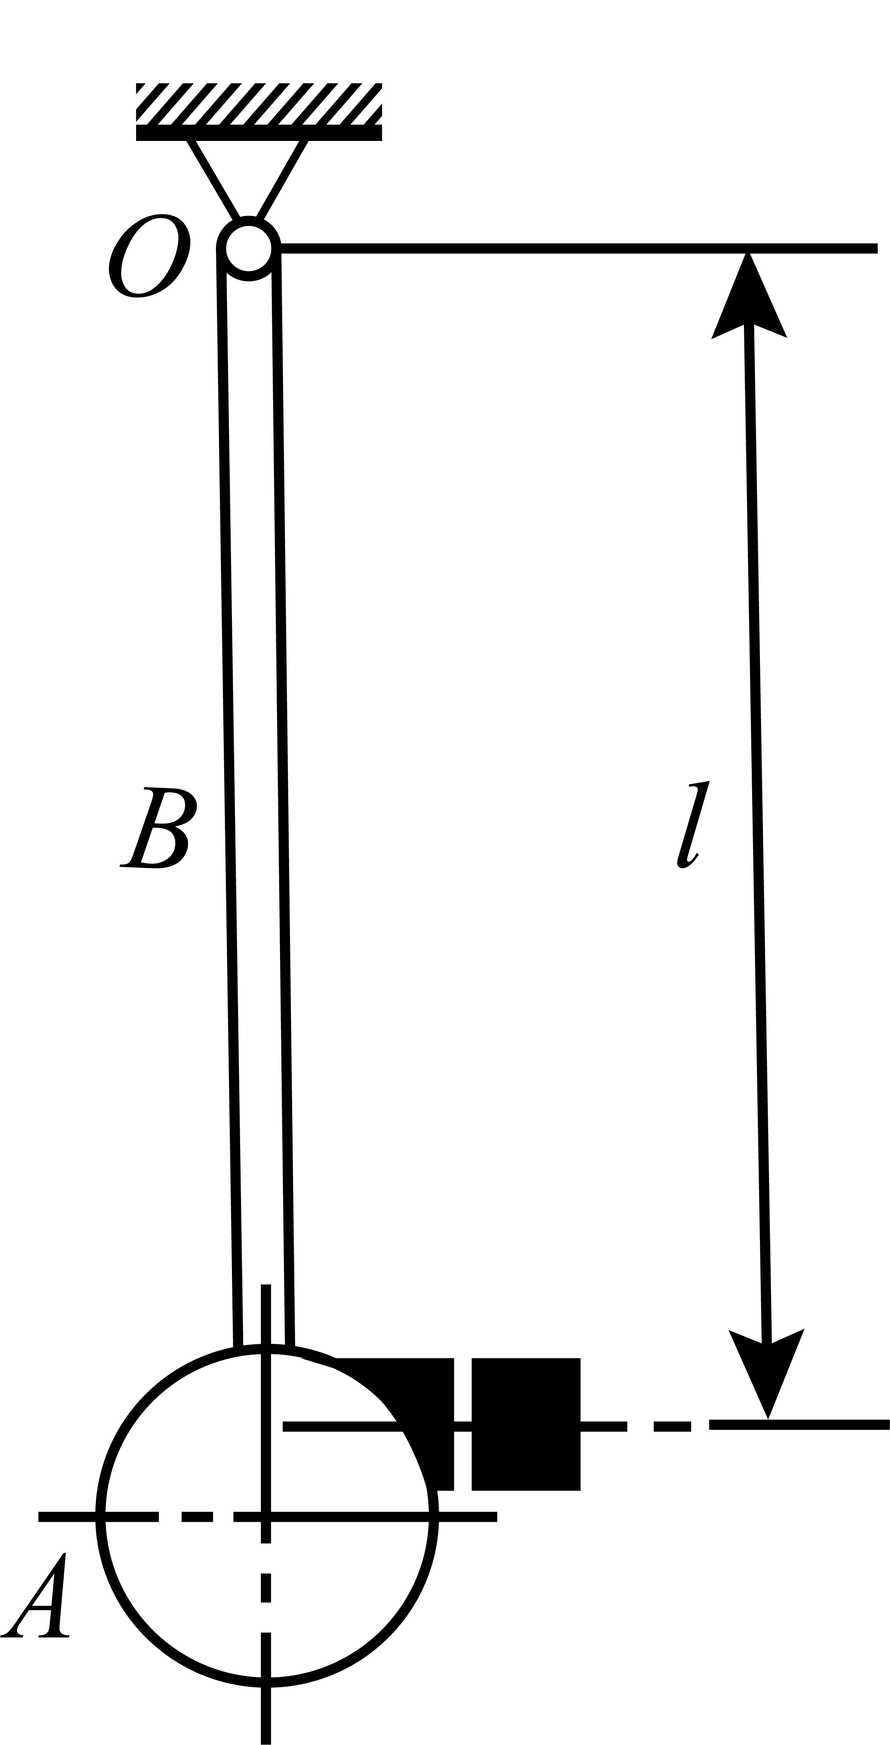 一撞击机的摆由钢铸圆盘A和圆杆B组成，如图所示。钢铸圆盘的半径为100mm，厚为50mm。圆杆B的半